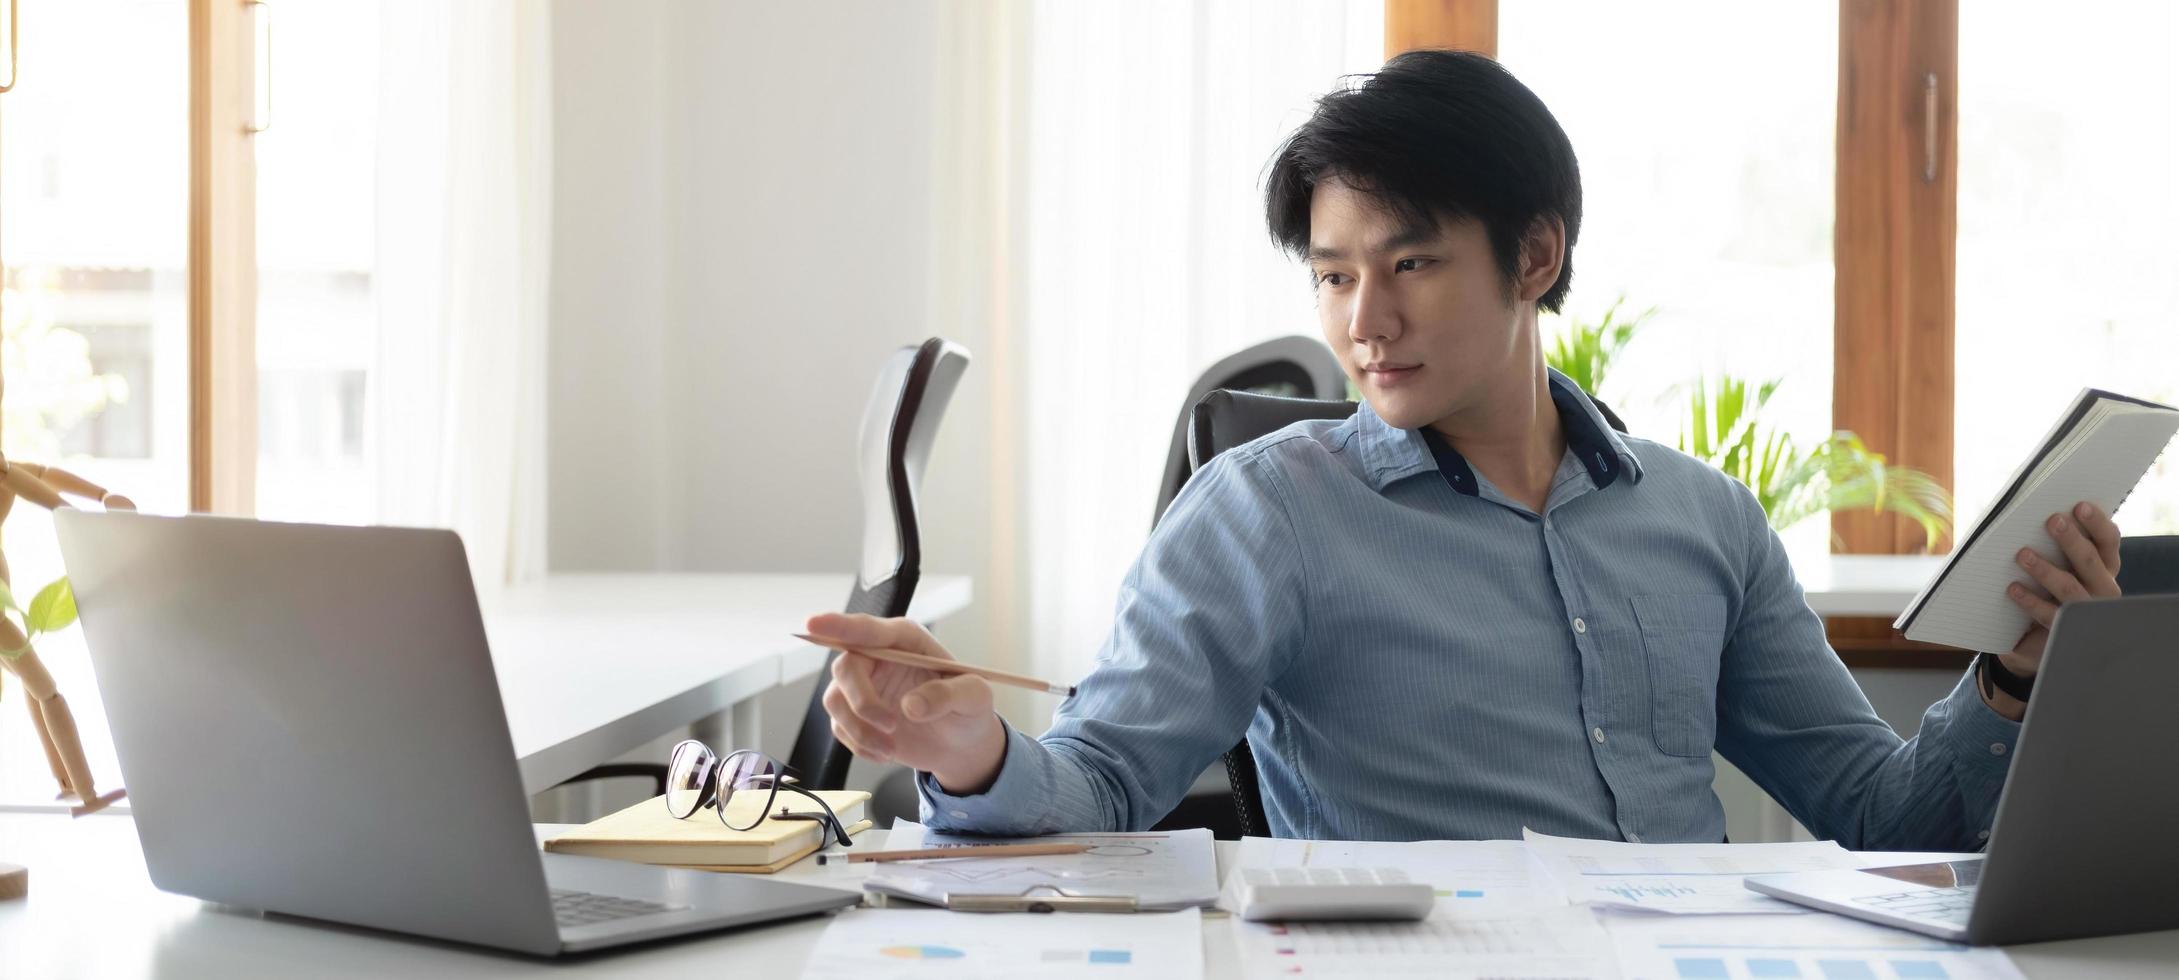 portrait d'un jeune homme asiatique pigiste à la main travaille son travail sur une tablette informatique dans un bureau moderne. faire un rapport d'analyse comptable sur les données d'investissement immobilier, le concept de systèmes financiers et fiscaux. photo